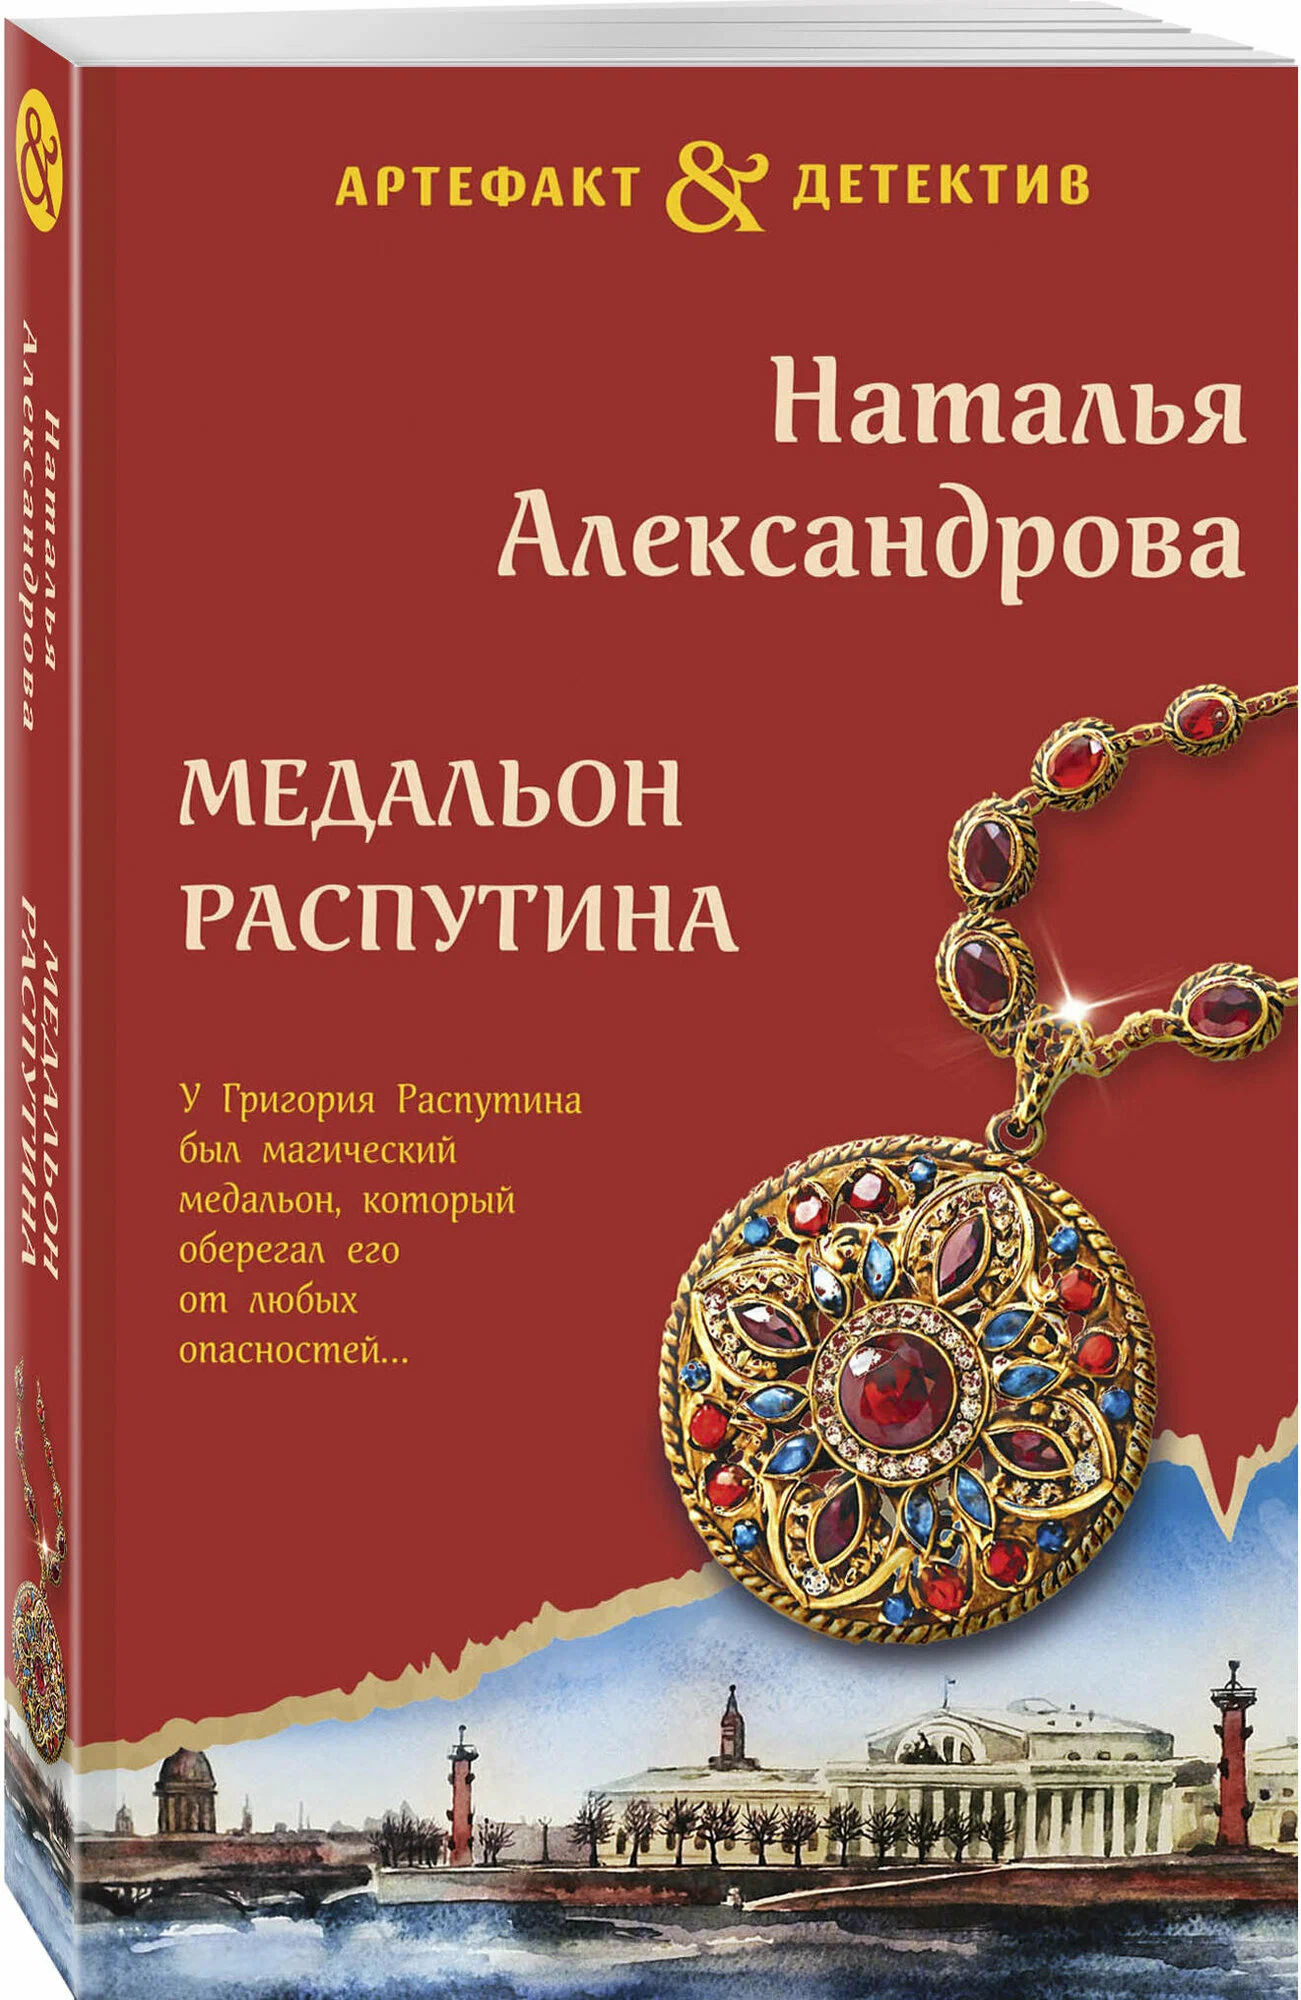 Медальон Распутина